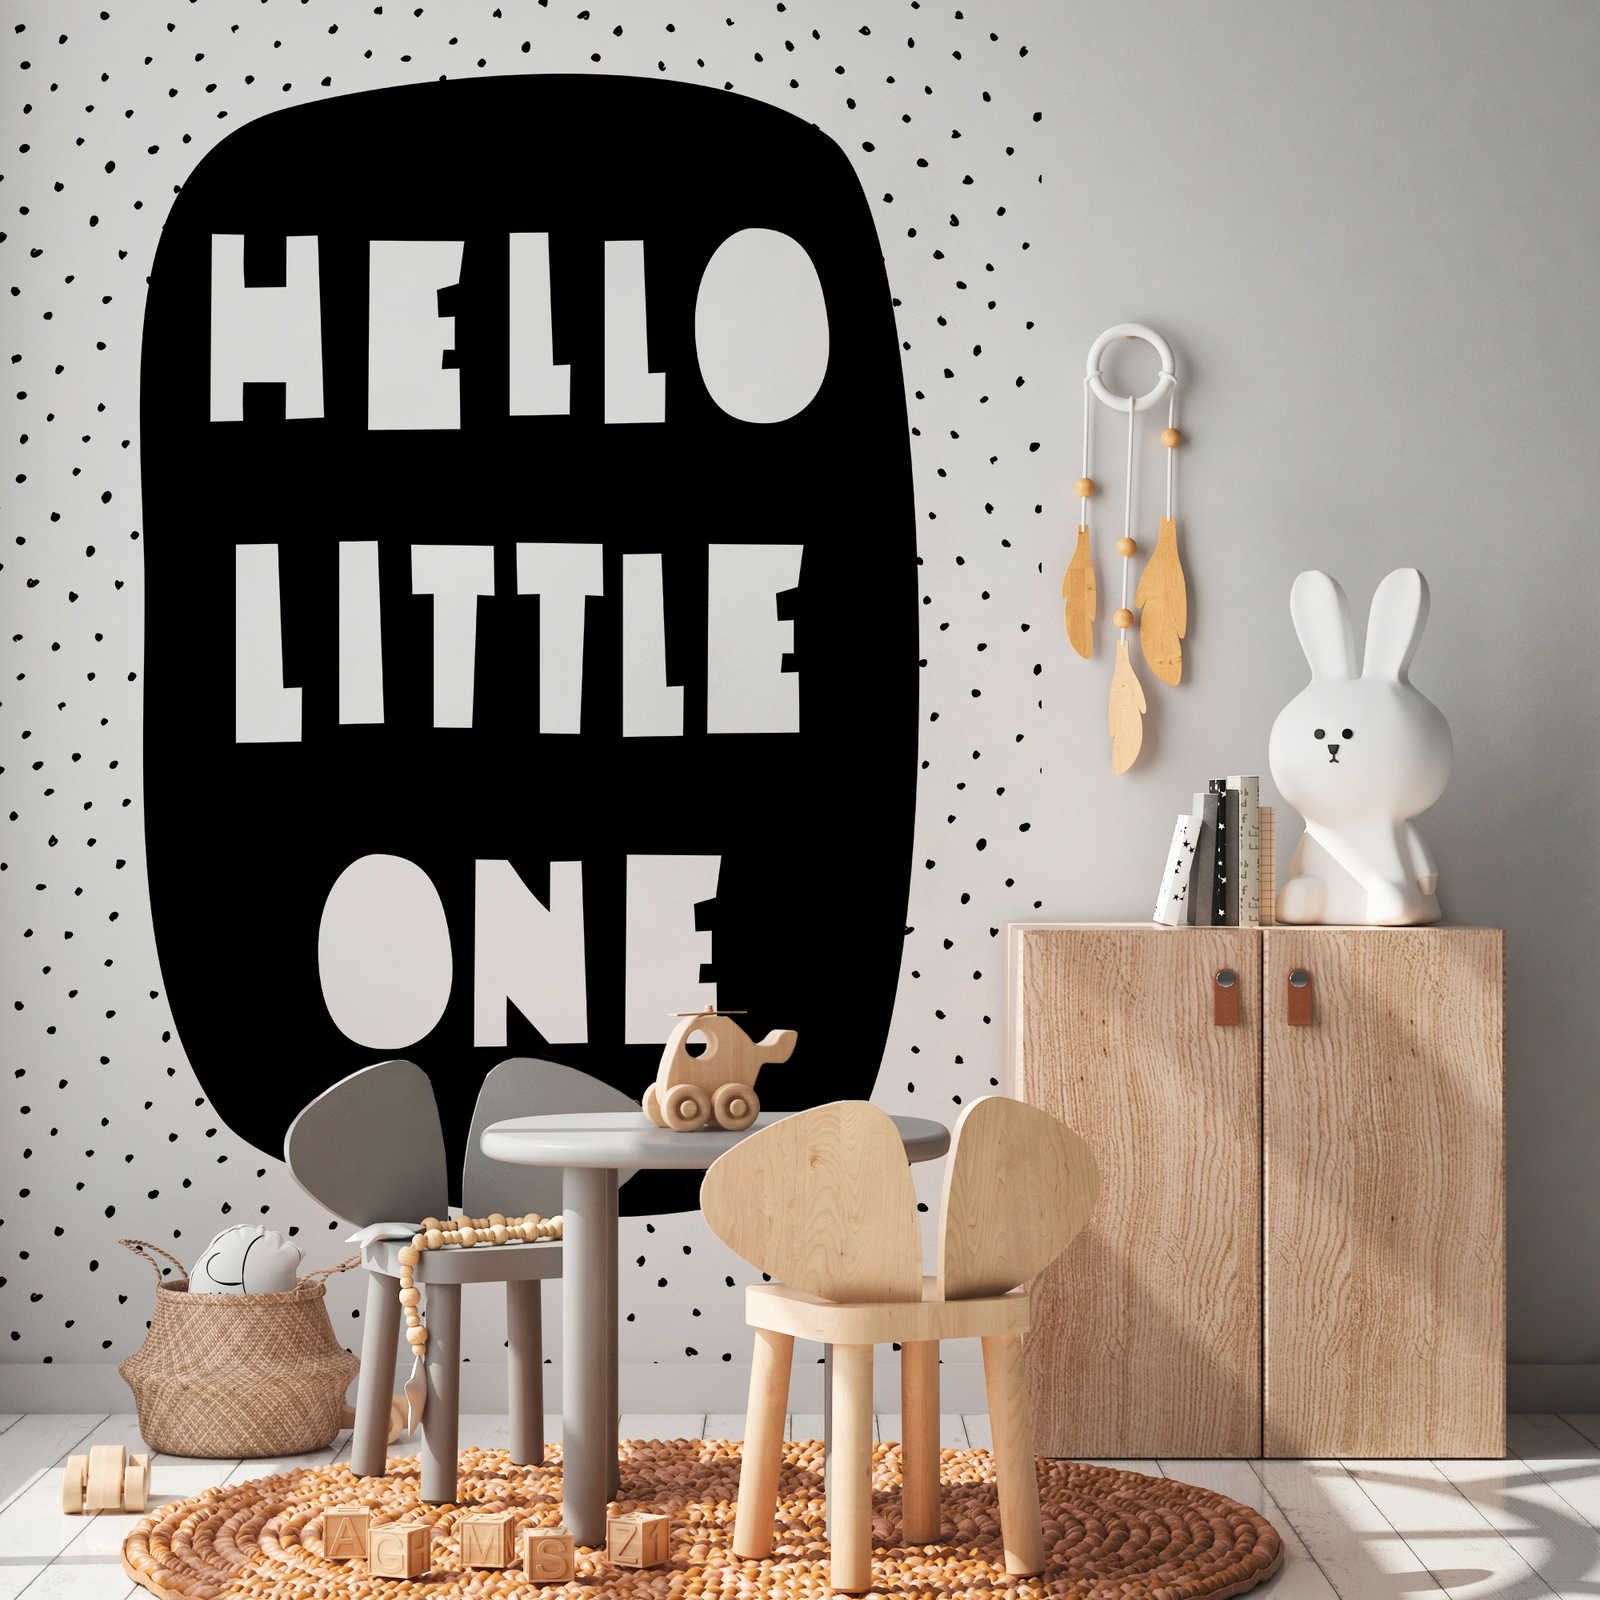 Digital behang voor kinderkamer met opschrift "Hello Little One" - Glad & mat vlies
